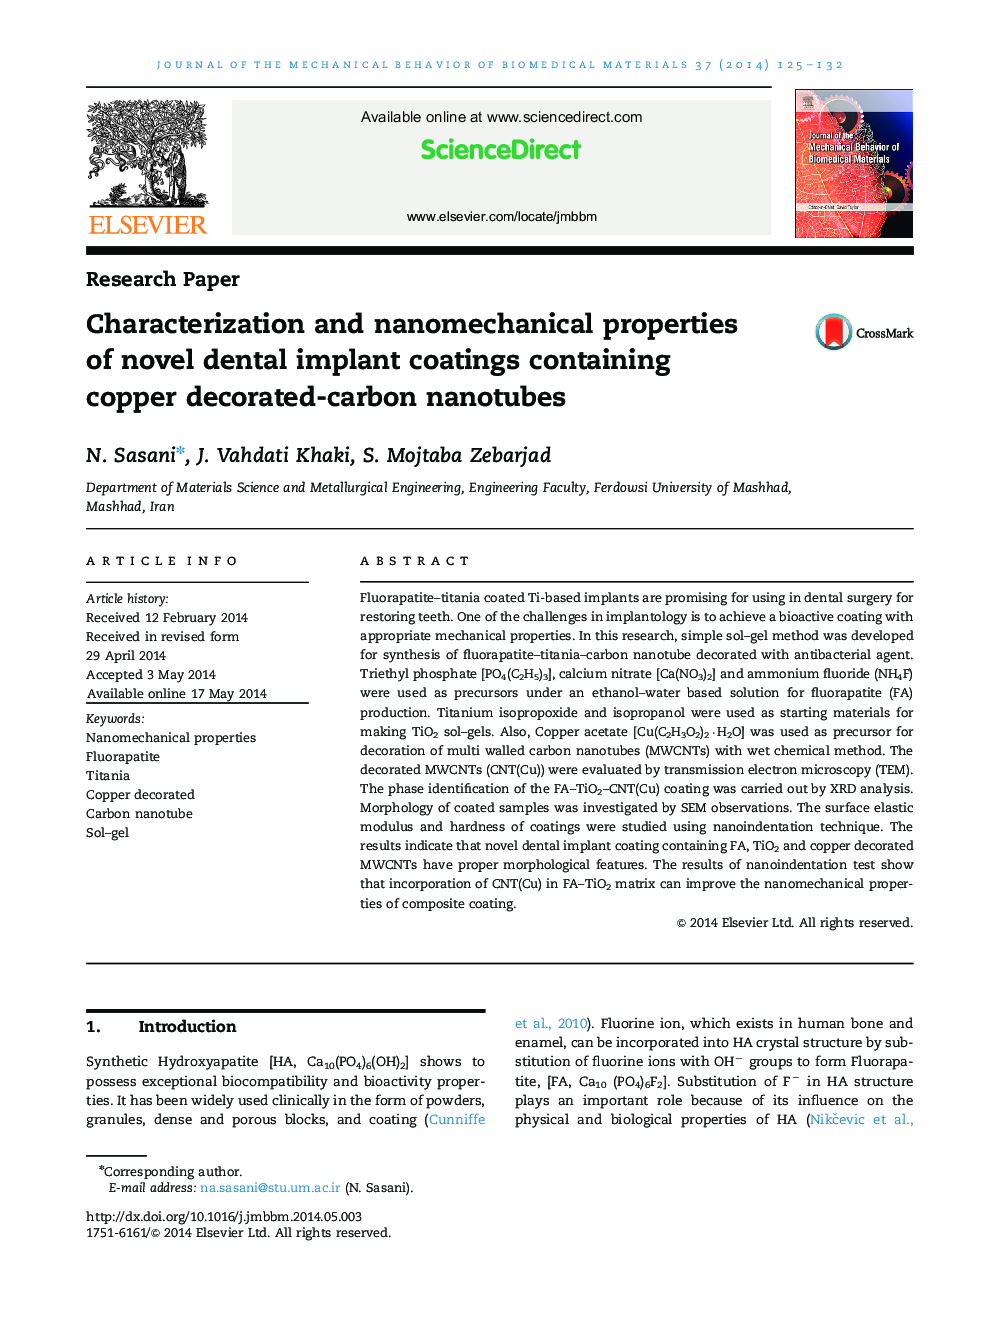 خصوصیات و خصوصیات نانو تکنیک های جدید پوشش های ایمپلنت دندانی شامل نانولوله های کربنی تزئینی مس 